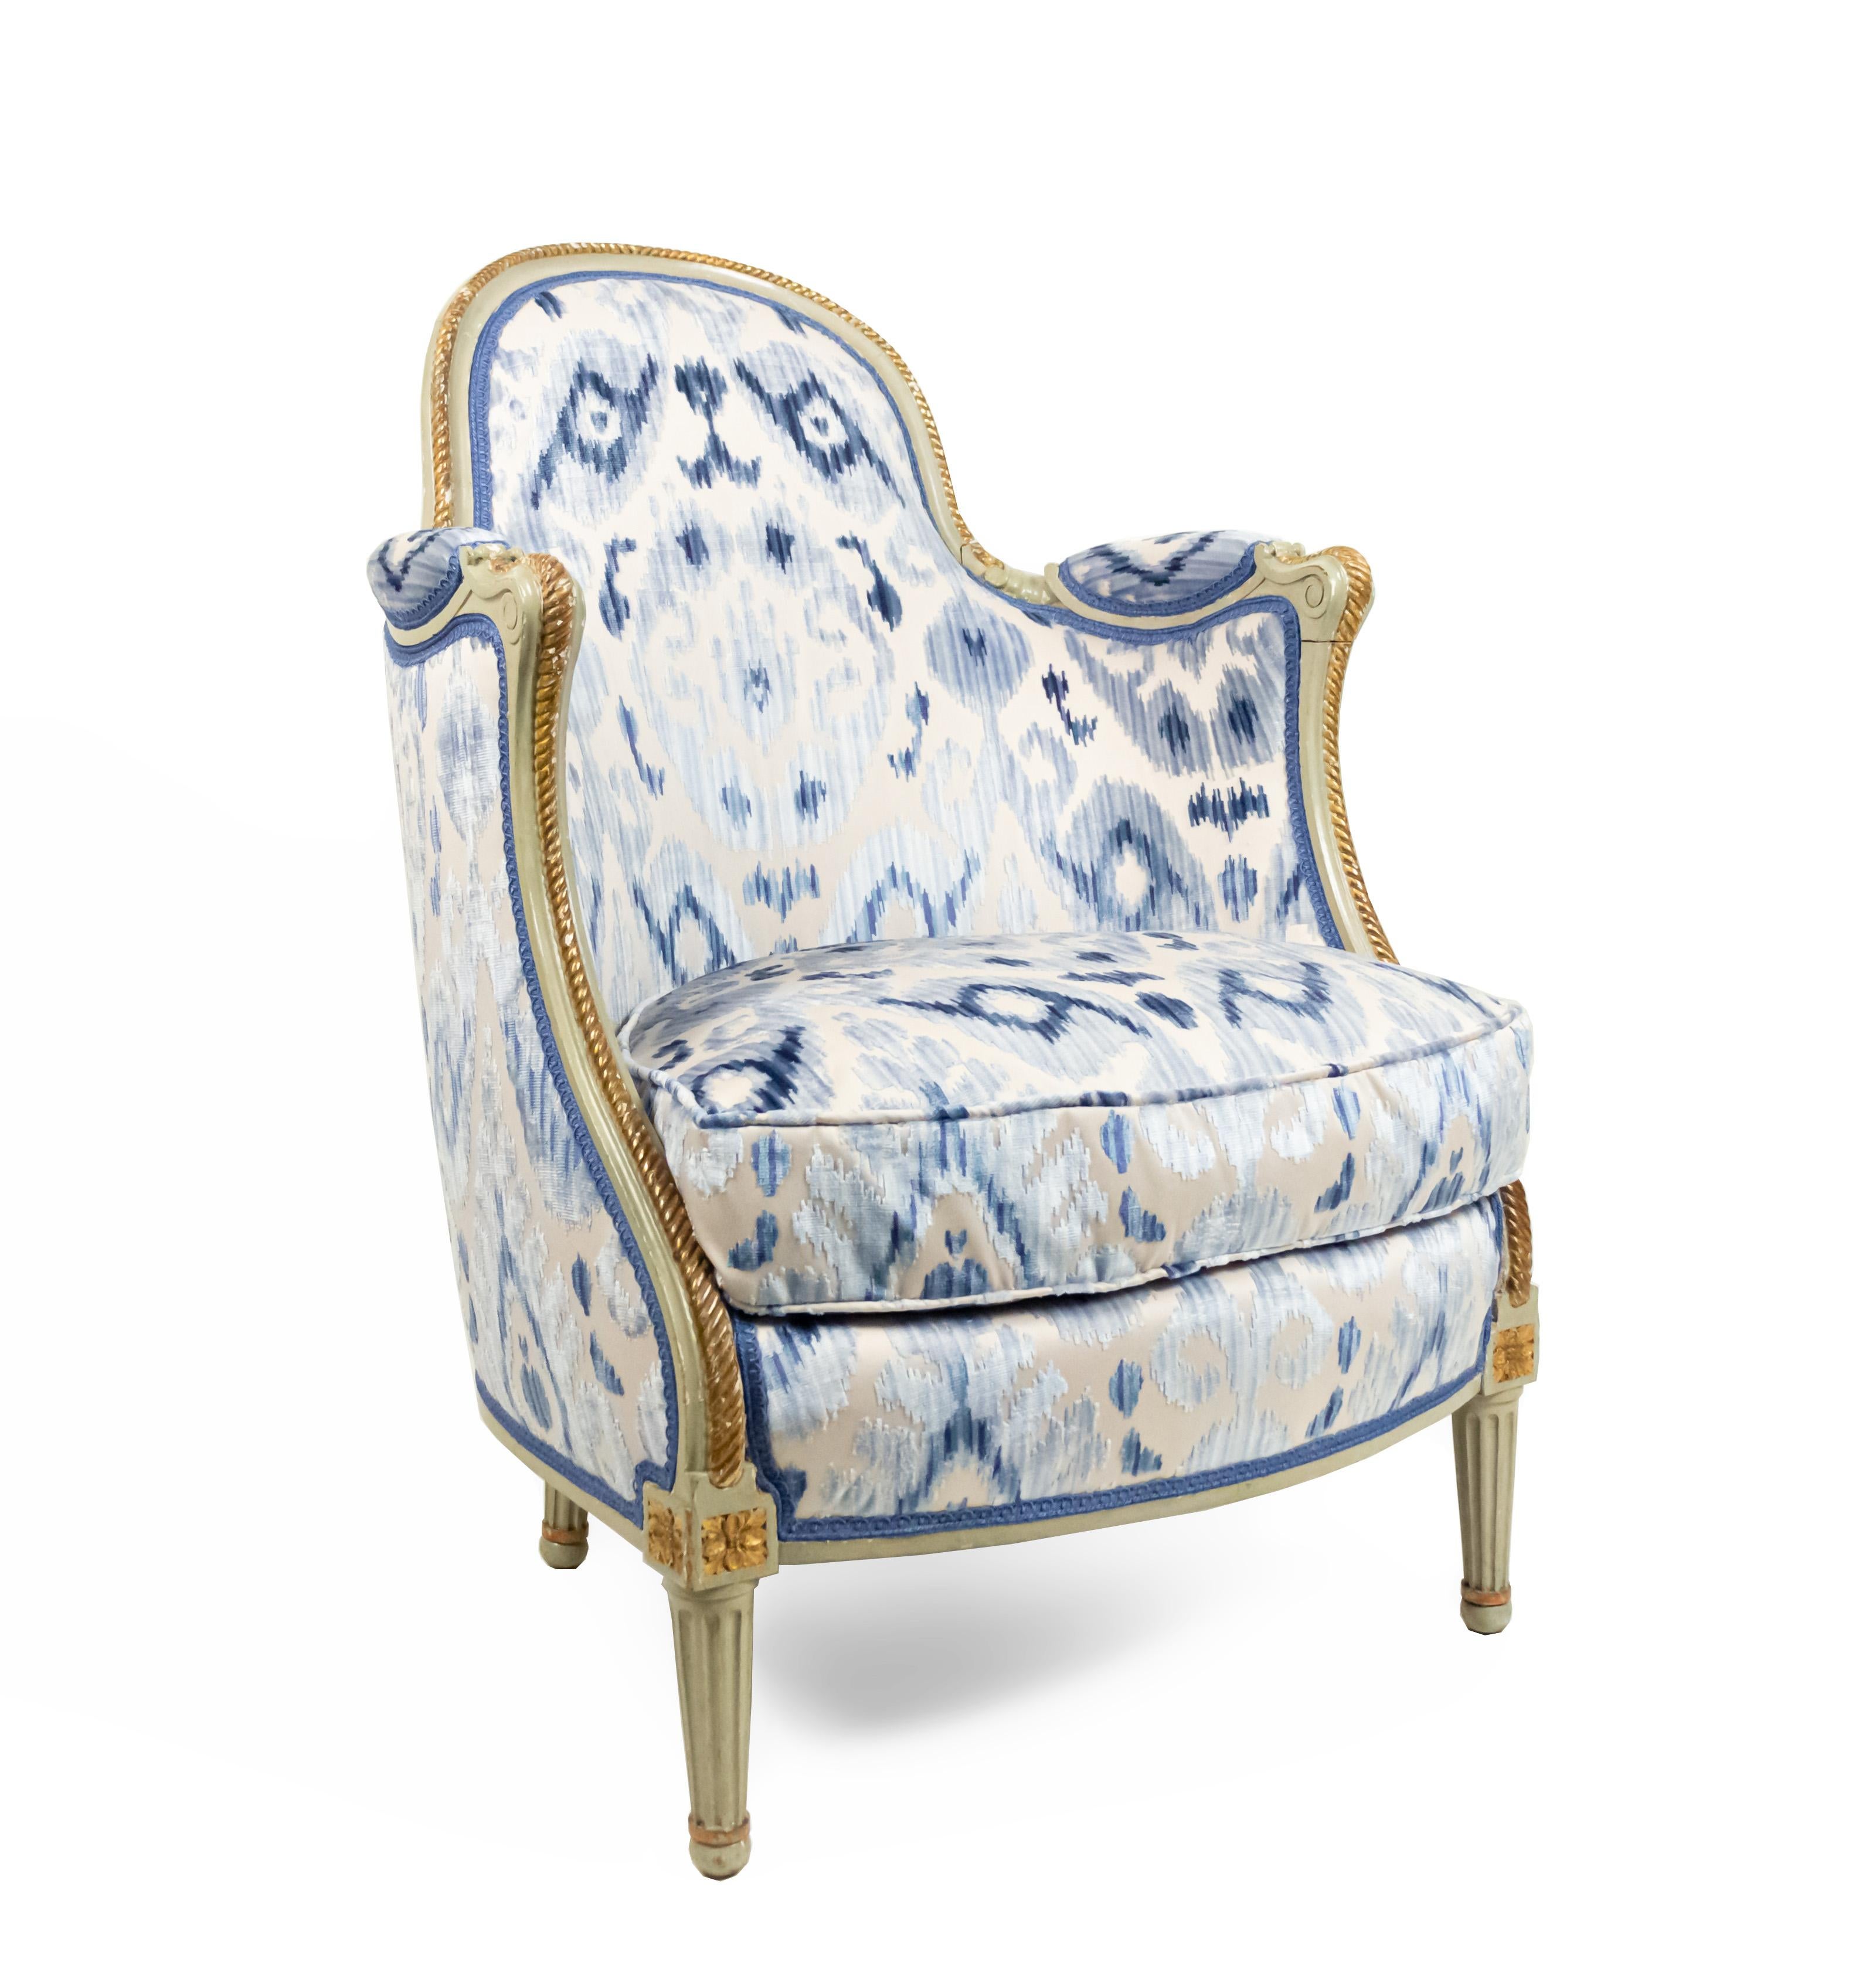 Paire de fauteuils bergère de style Louis XV (19e siècle), peints en vert et garnis de cordes dorées, tapissés de velours bleu coupé et de satin beige de style Ikat. (PRIX PAR PAILLE)
